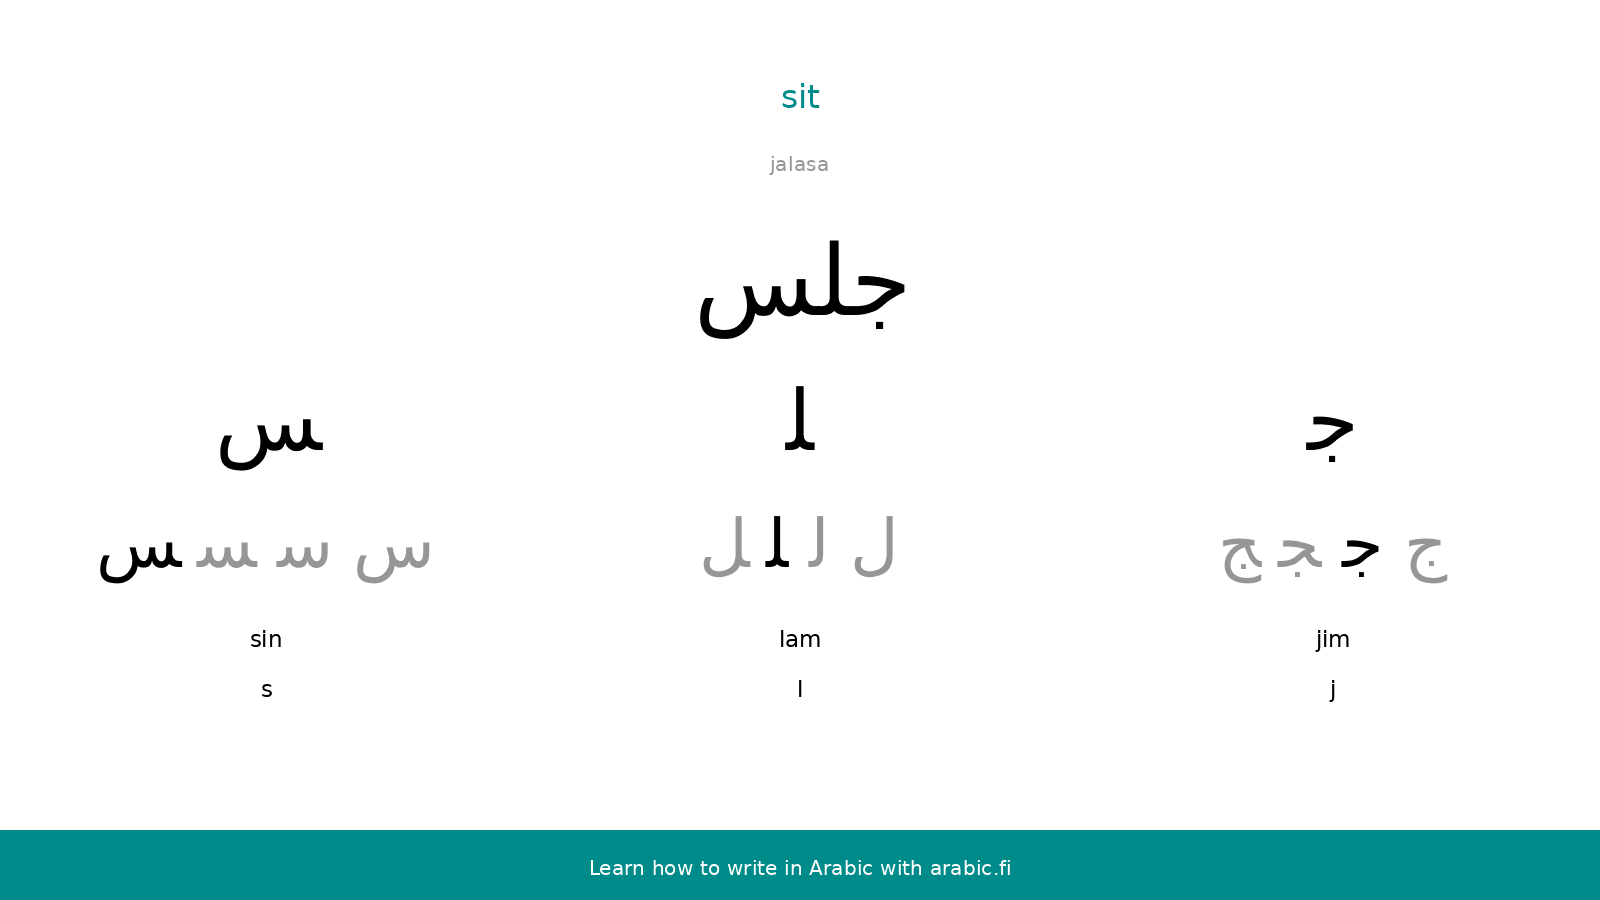 Sit – an Arabic word